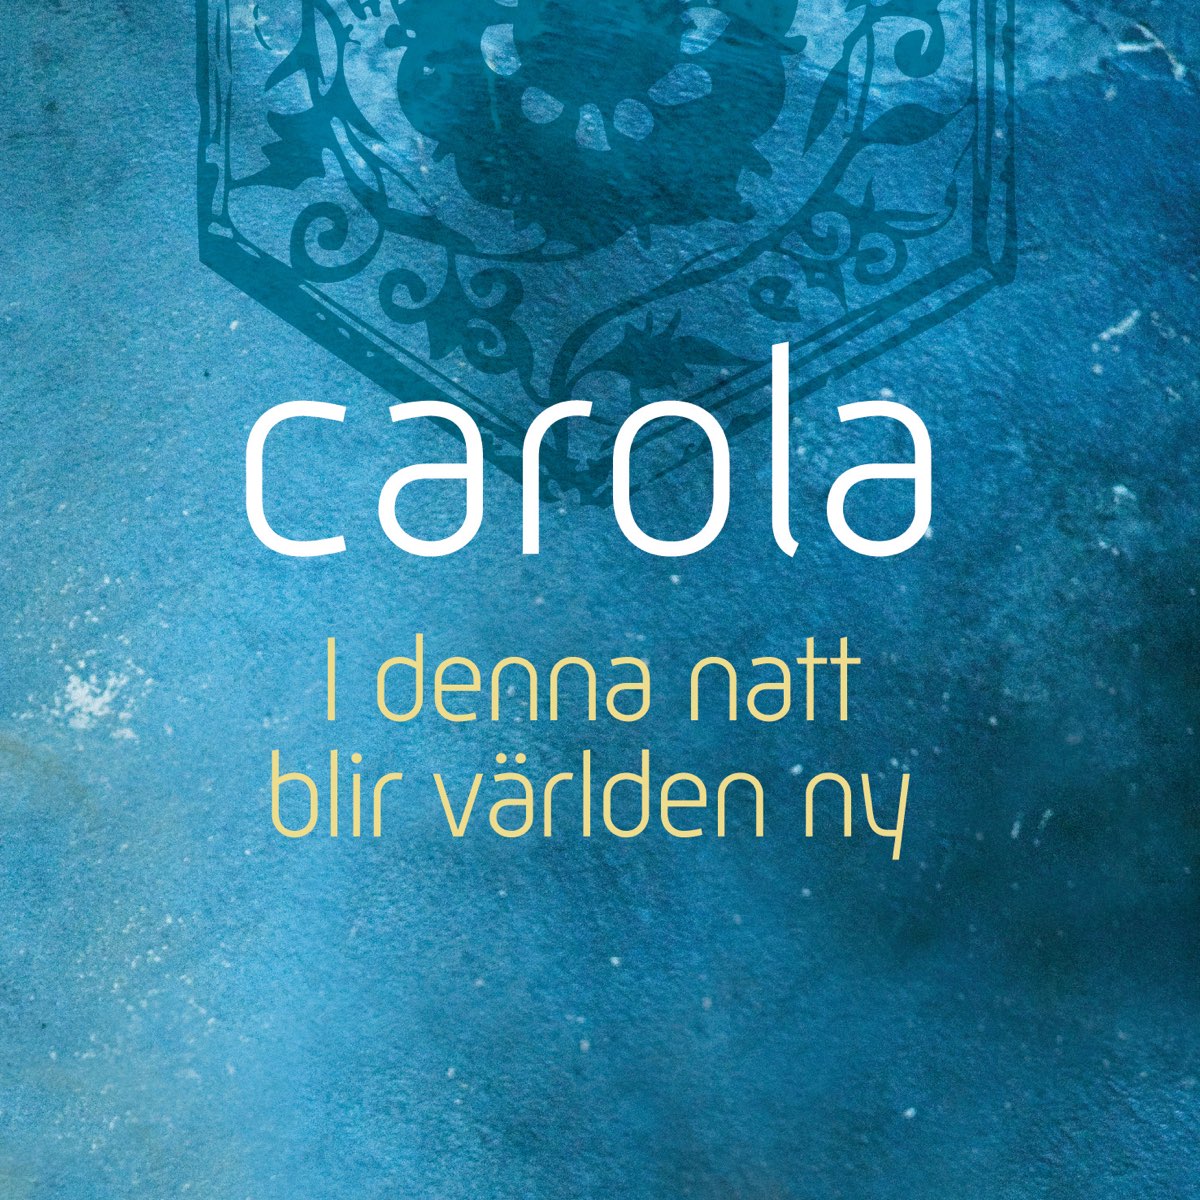 I denna natt blir världen ny - Single by Carola on Apple Music